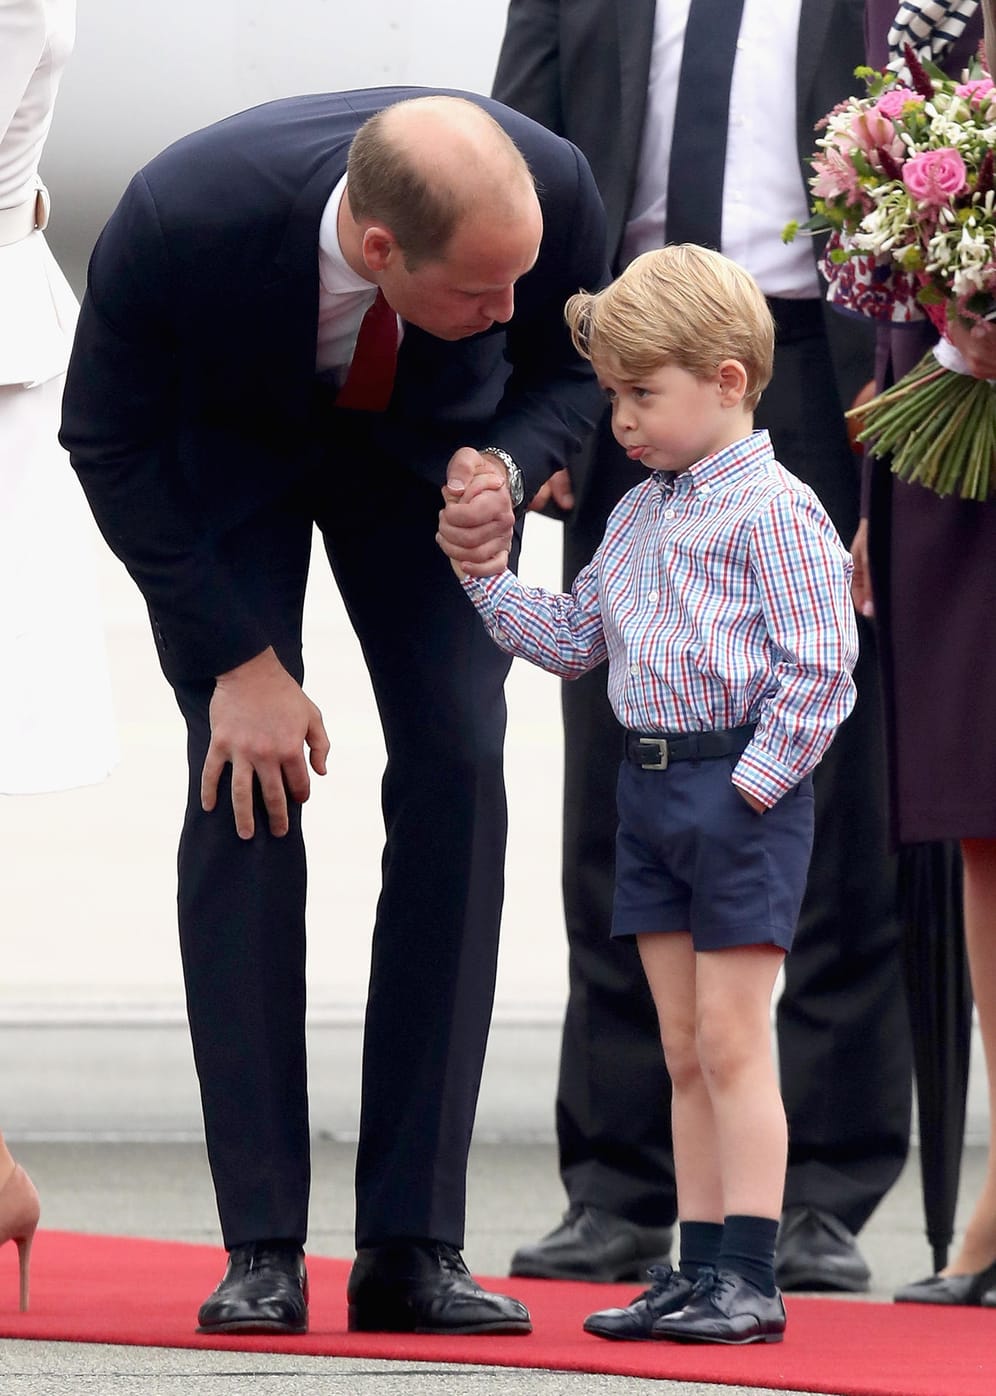 Selber Tag, andere Miene: Prinz George scheint nicht so begeistert.